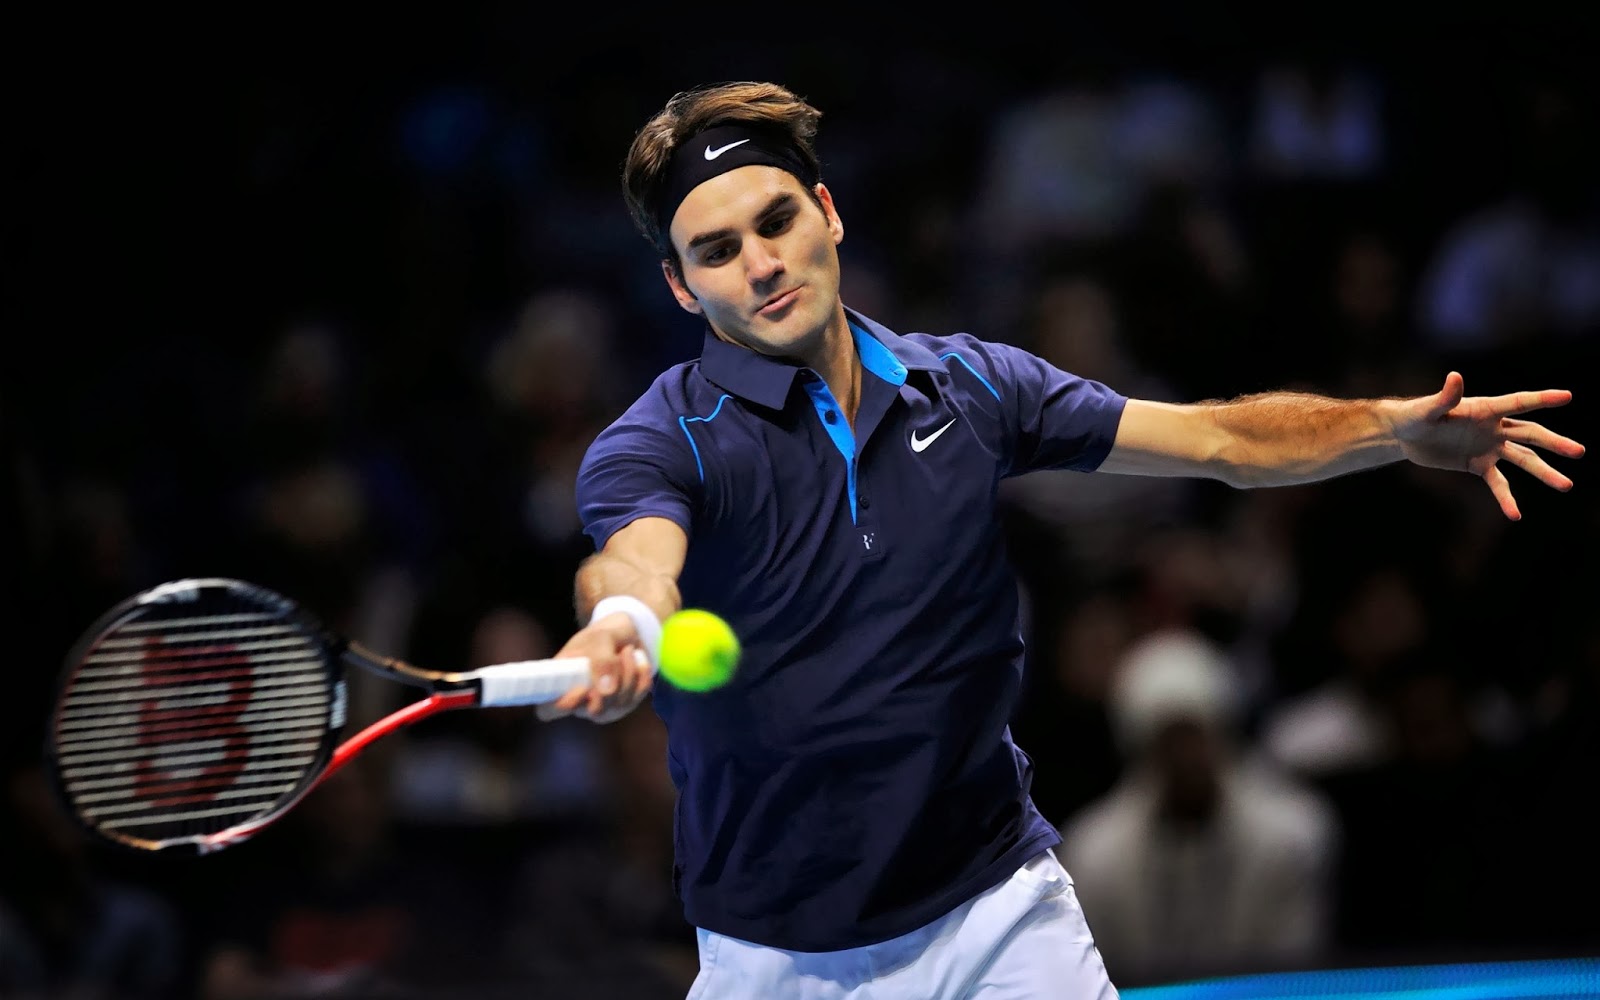 World Sport Star : Roger Federer Tennis Player | Latest ...